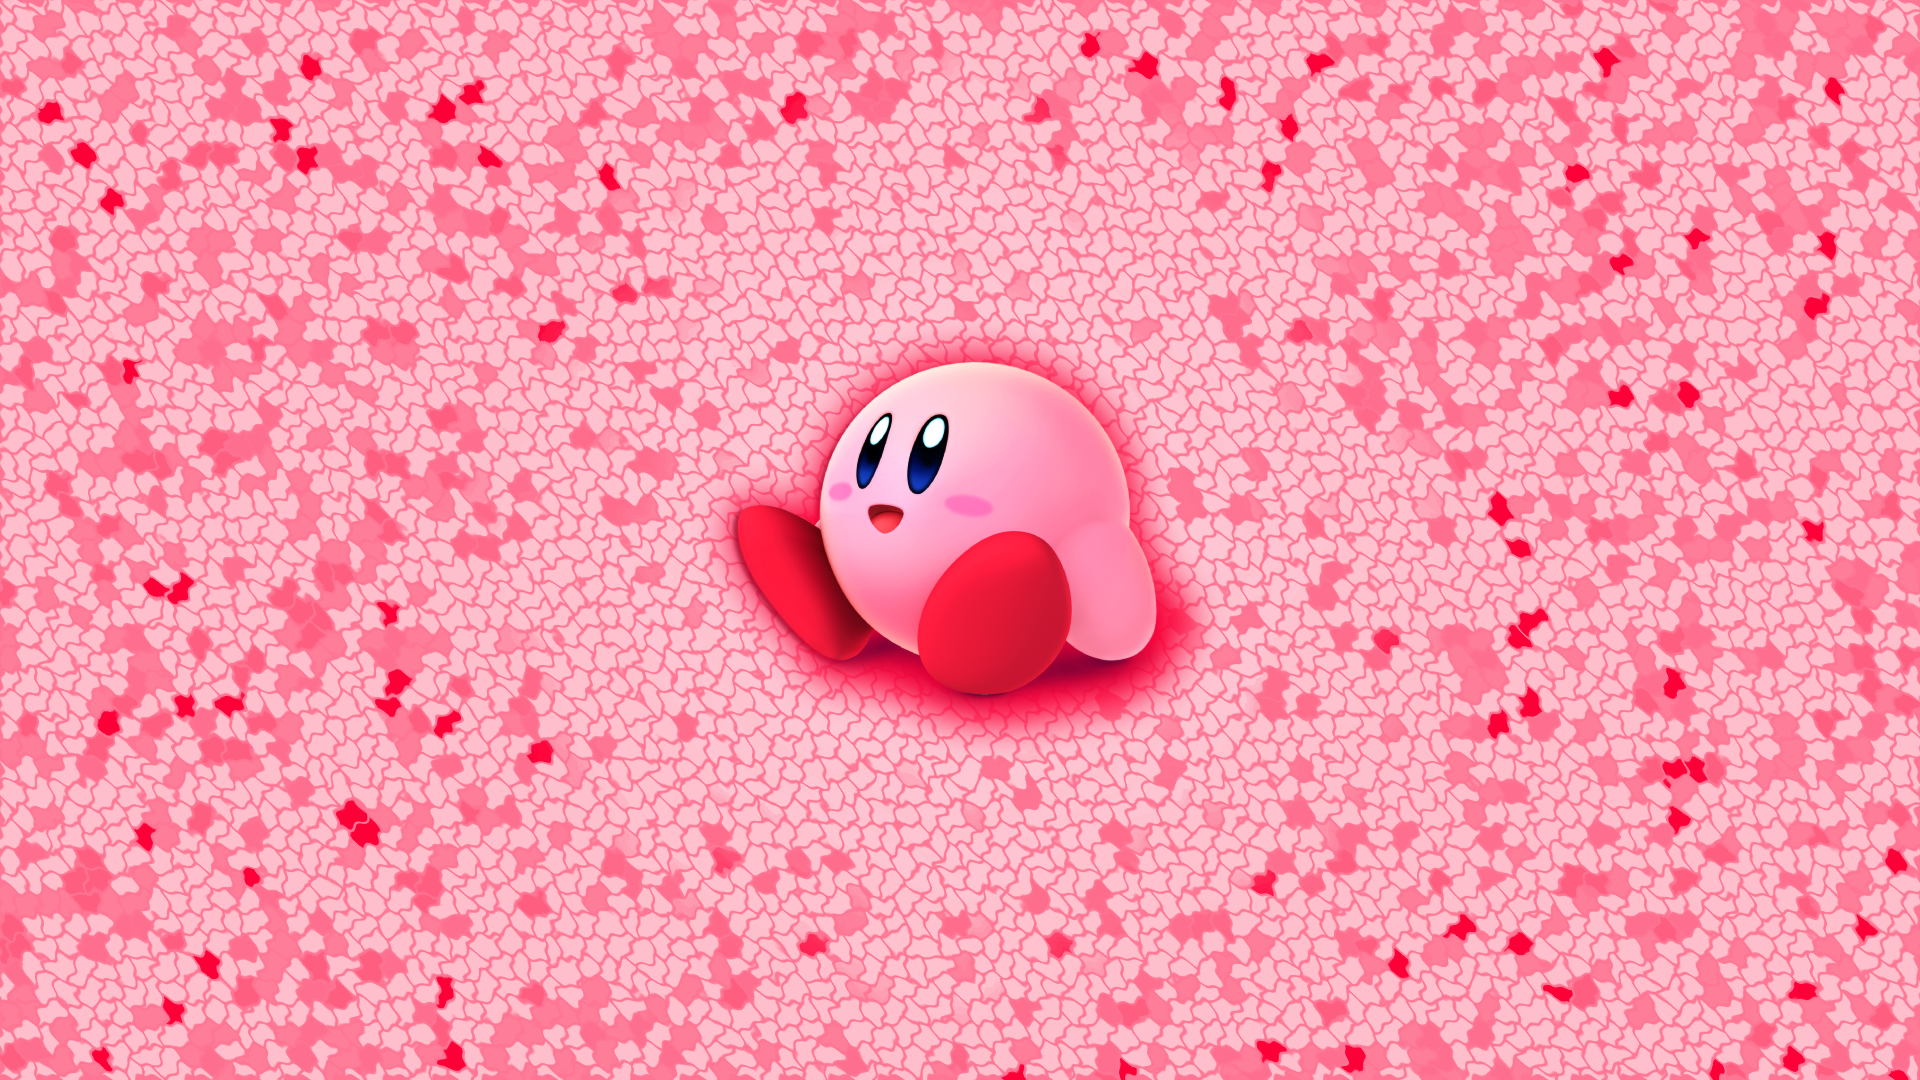 Cùng khám phá thế giới vui nhộn của Kirby với bộ sưu tập hình nền Kirby độc đáo và đáng yêu. Hãy cài đặt hình nền Kirby ngộ nghĩnh trên điện thoại hoặc máy tính của bạn để mang lại sự tươi mới và vui vẻ cho ngày mới.